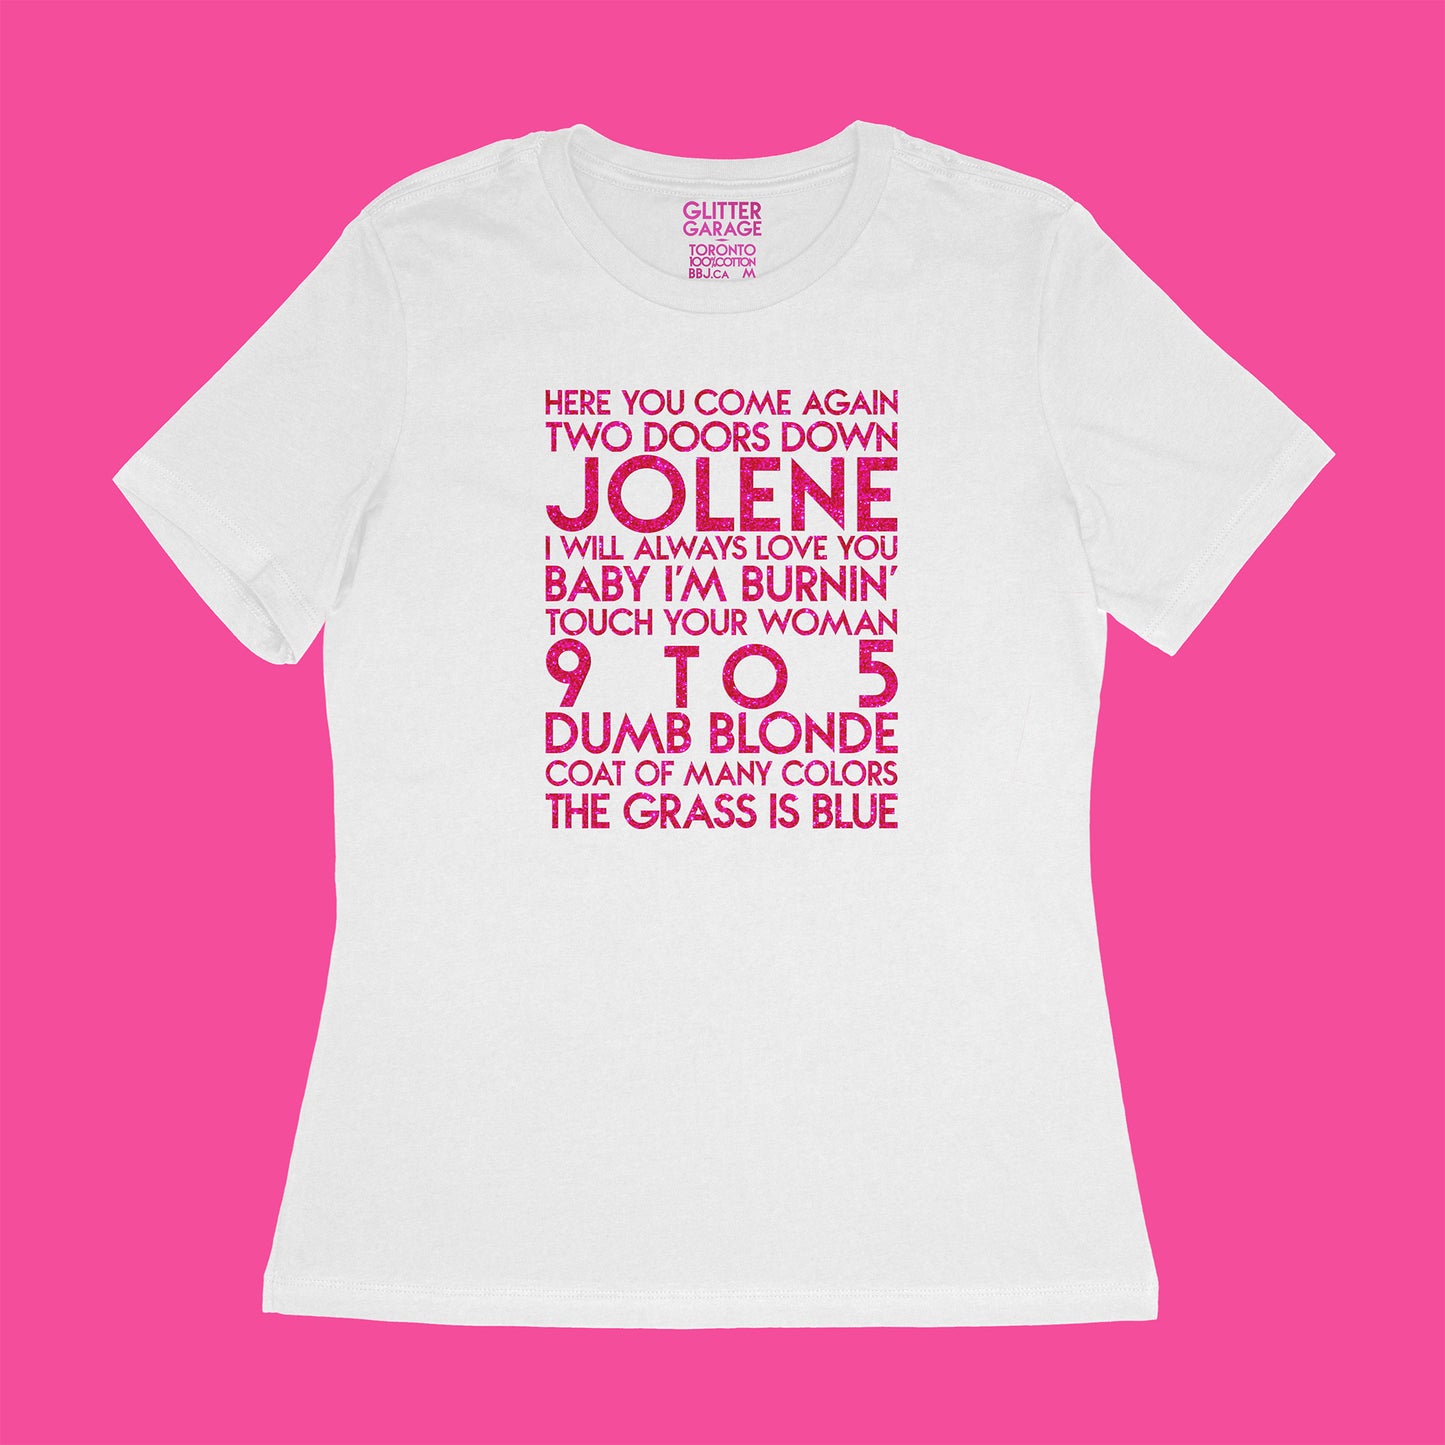 custom sample - Dolly songs - hot pink glitter text on white womens t-shirt - Custom YourTen tee by BBJ / Glitter Garage